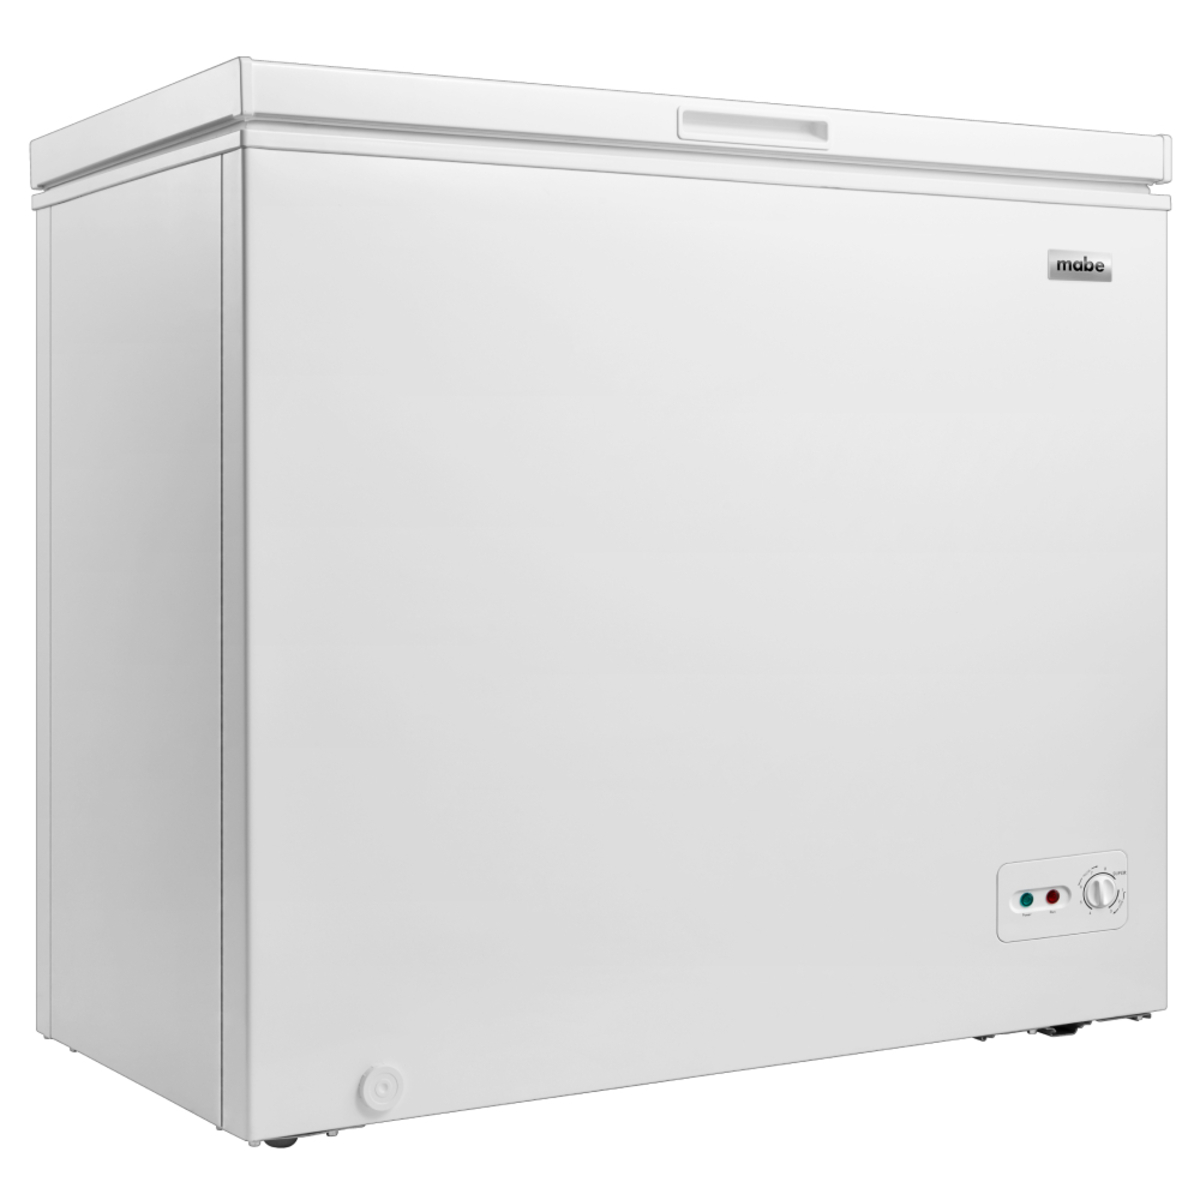 Congelador de pecho de 5.0 pies cúbicos, pequeño congelador de puerta  superior blanca con cesta extraíble, bajo ruido, 7 temperaturas ajustables  y